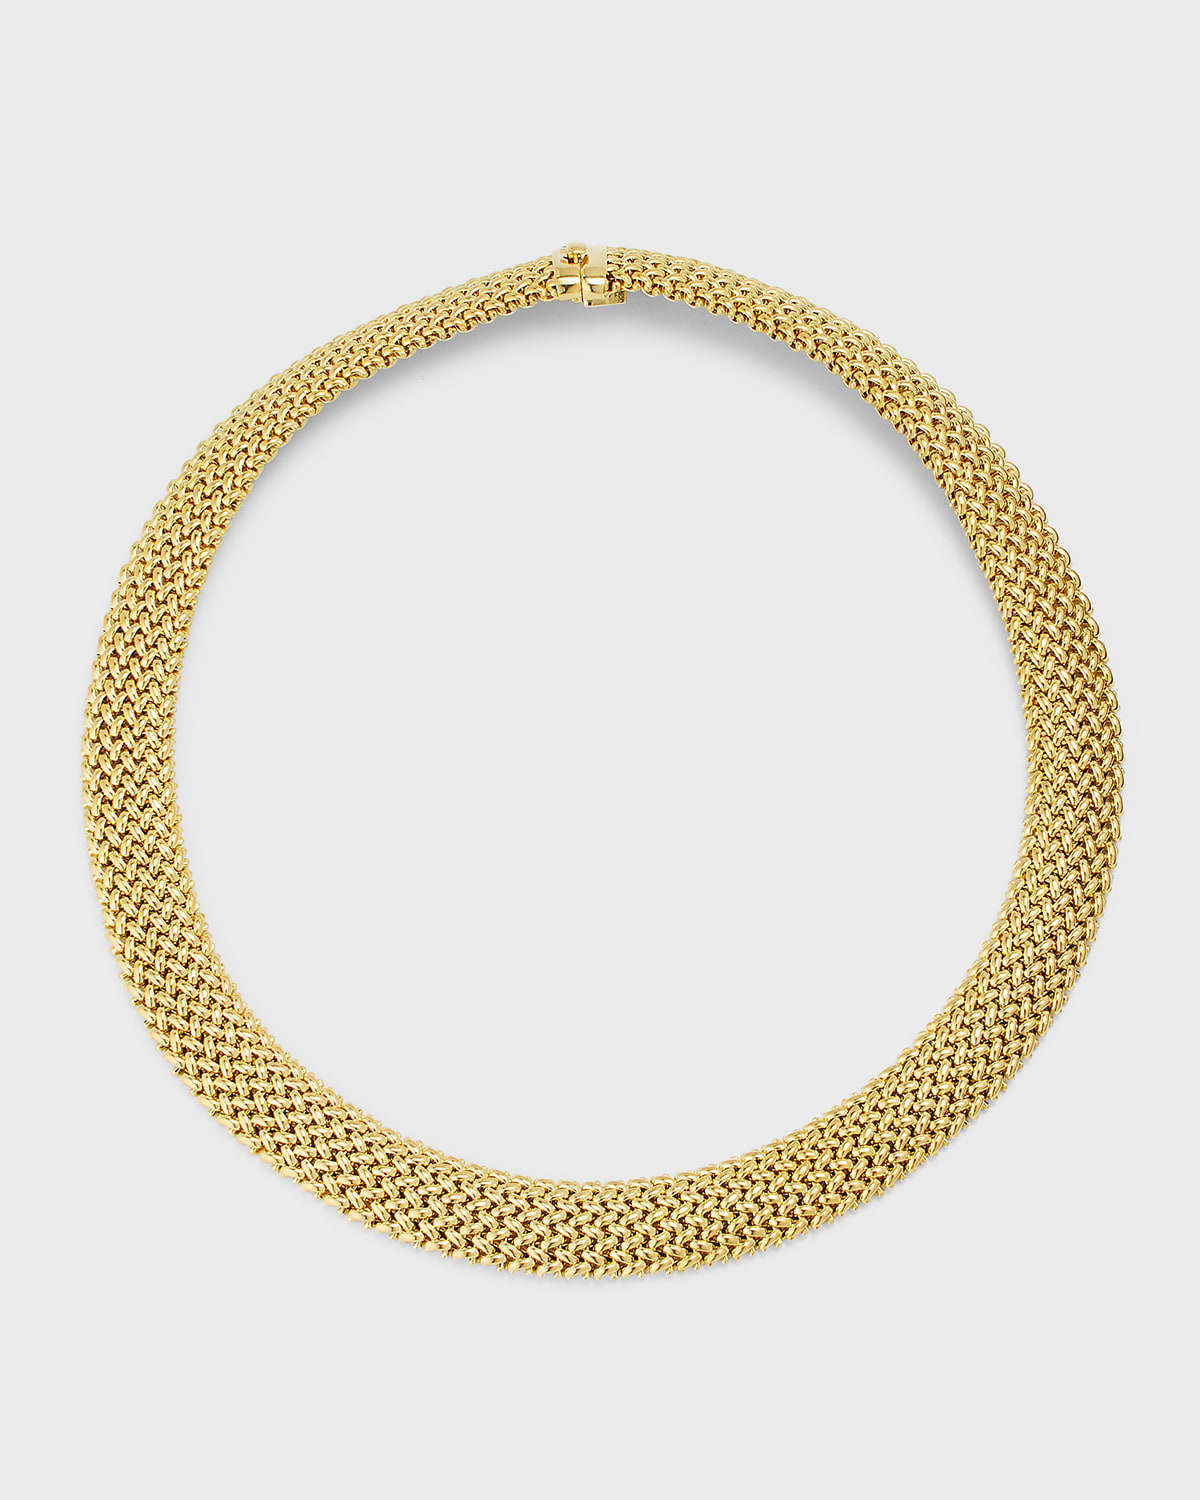 18K Yellow Gold Via Ornato Chicco Chain Necklace, 14mm